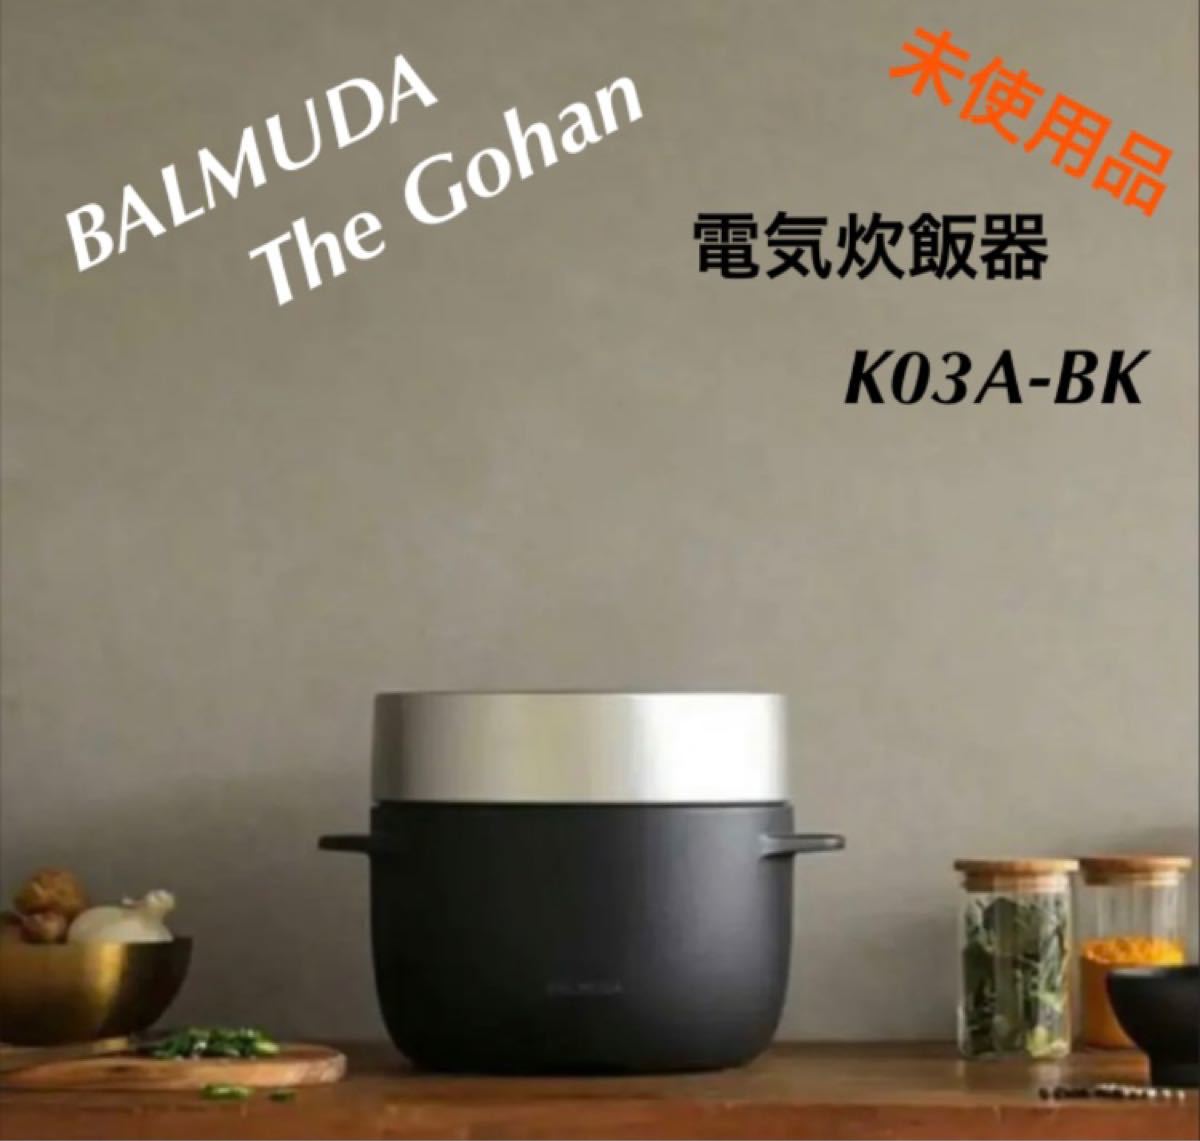 新品未使用 炊飯器 BALMUDA The Gohan ホワイト 3合 - rehda.com